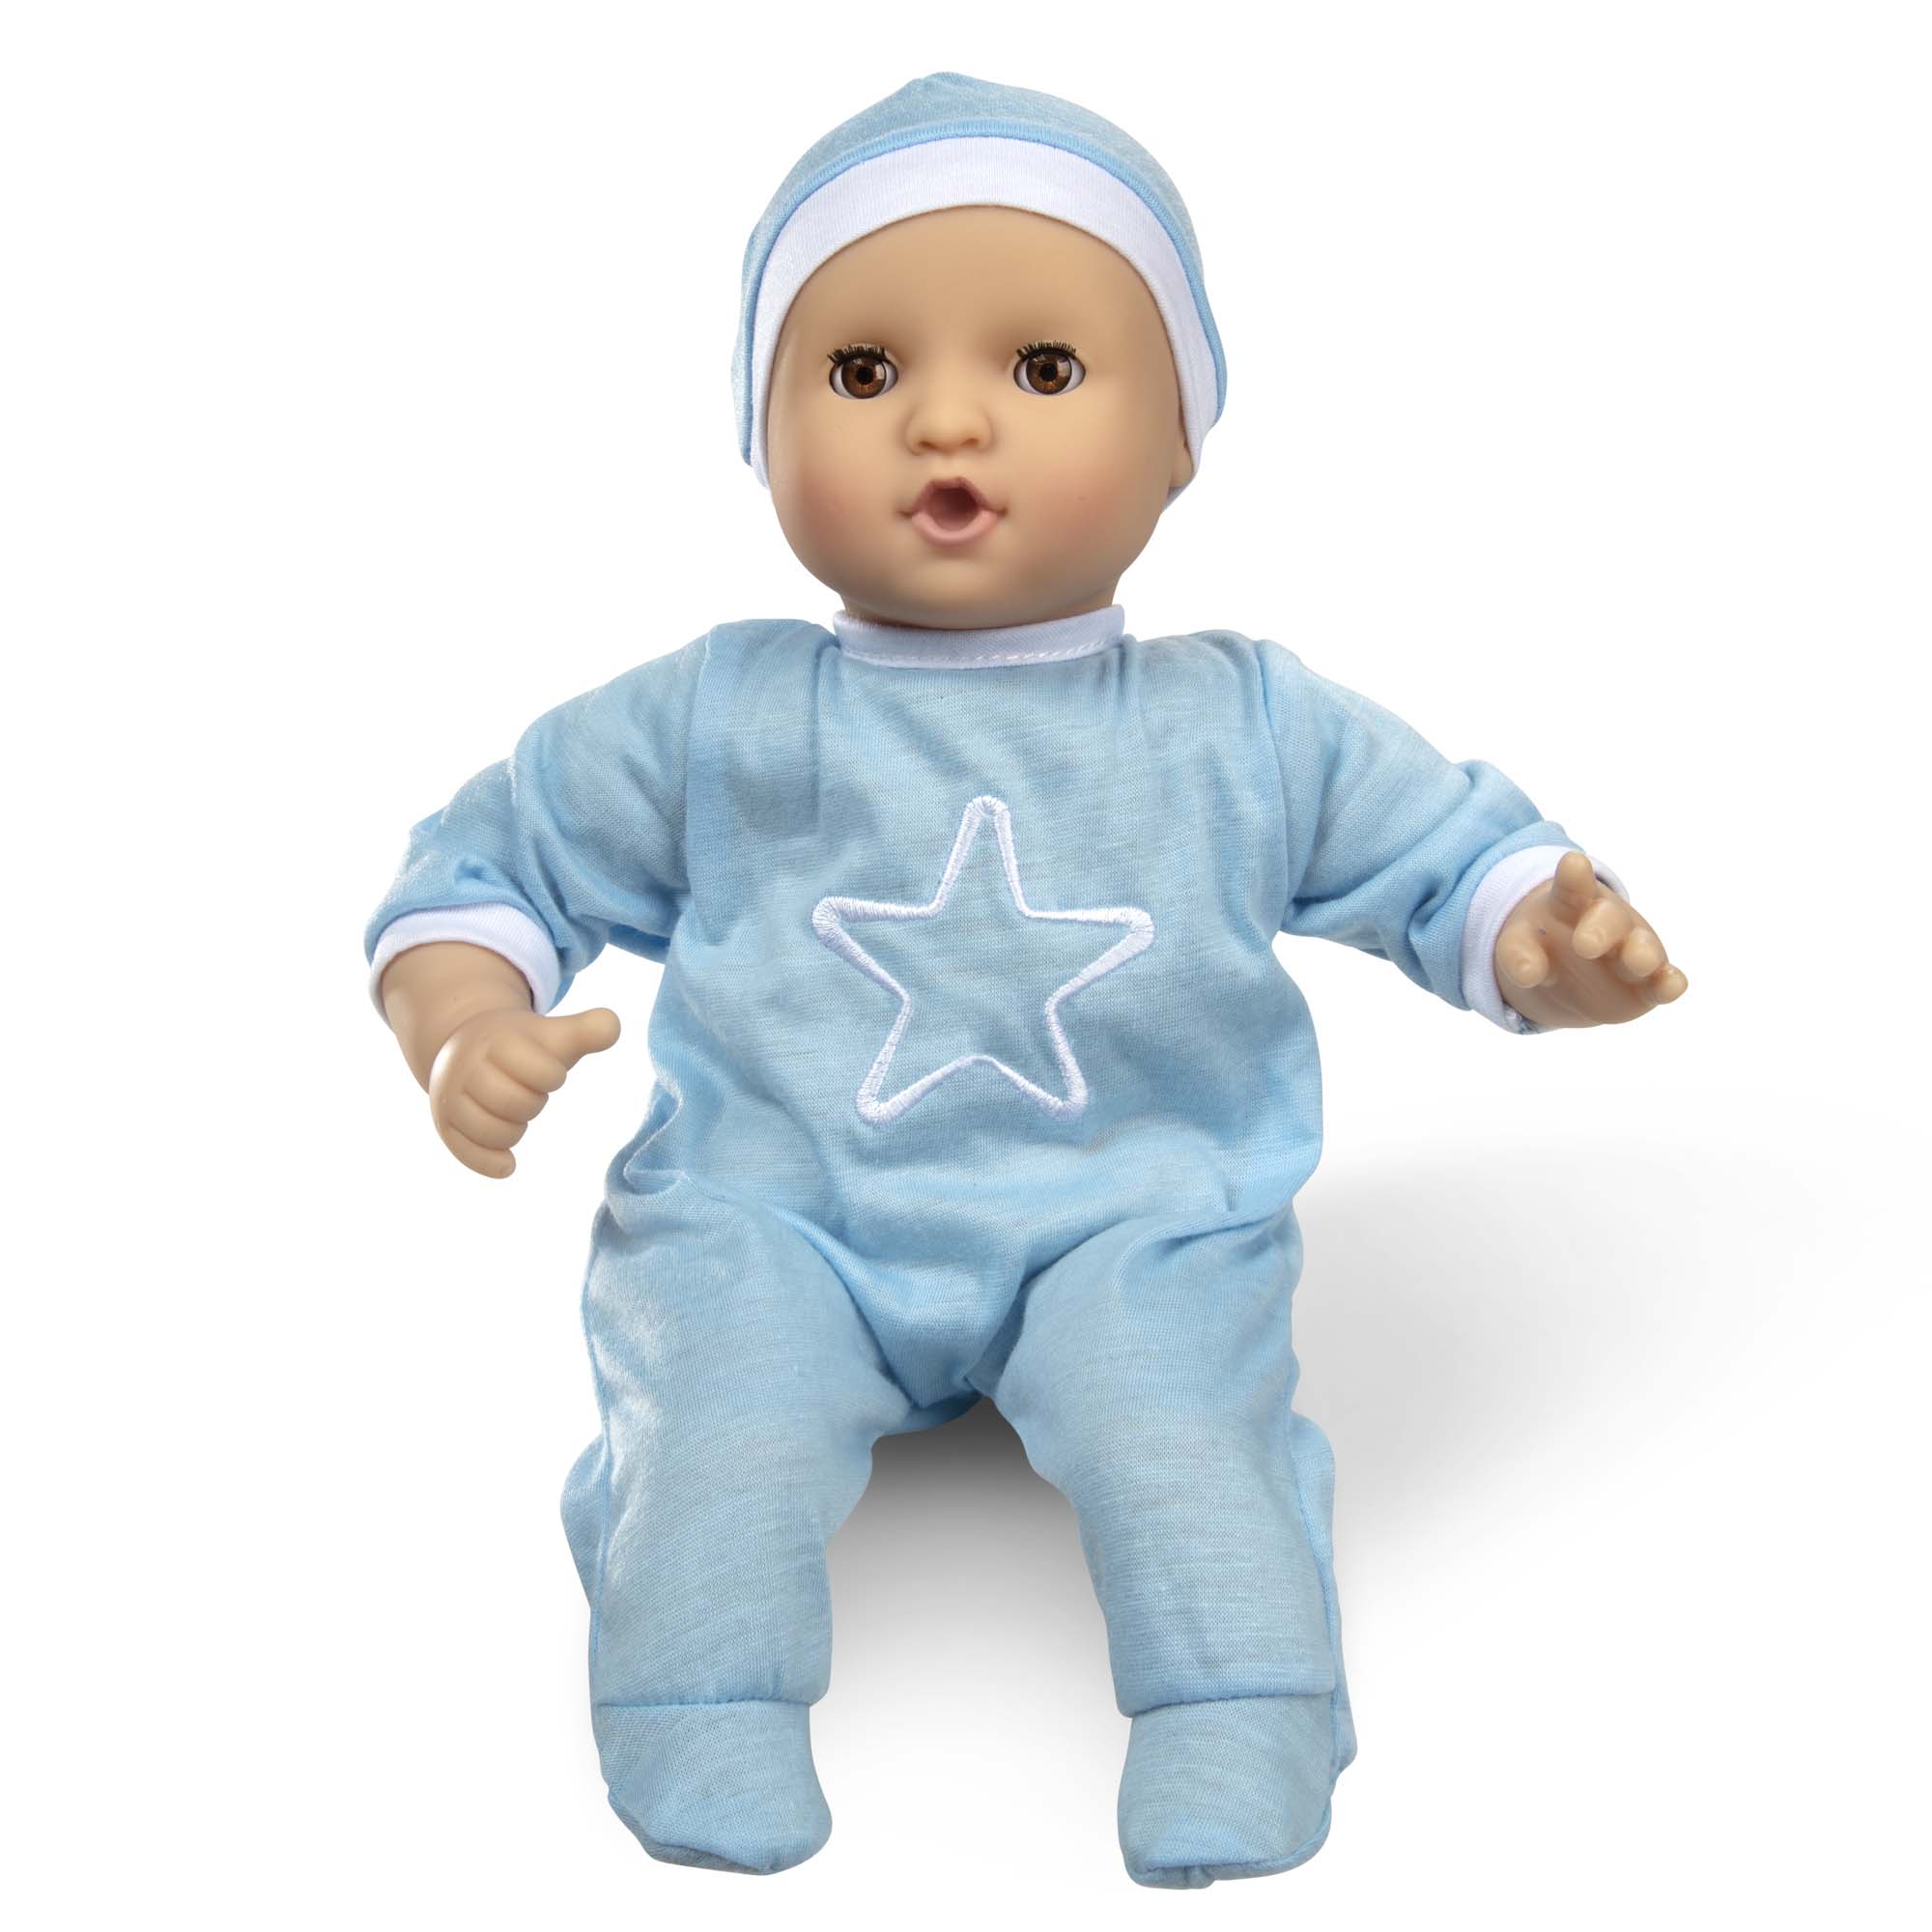 [เบบี้ ช. 12"] รุ่น 31712 ตุ๊กตาเบบี๋เด็กผู้ชาย พร้อมจุ๊บและหมวก Melissa & Doug Baby Jordan 12-Inch Baby Doll รีวิวดีใน Amazon USA กระพิบตาได้ อย่างดี ส่งเสริมความสัมพันธ์ สร้างความอ่อนโยน